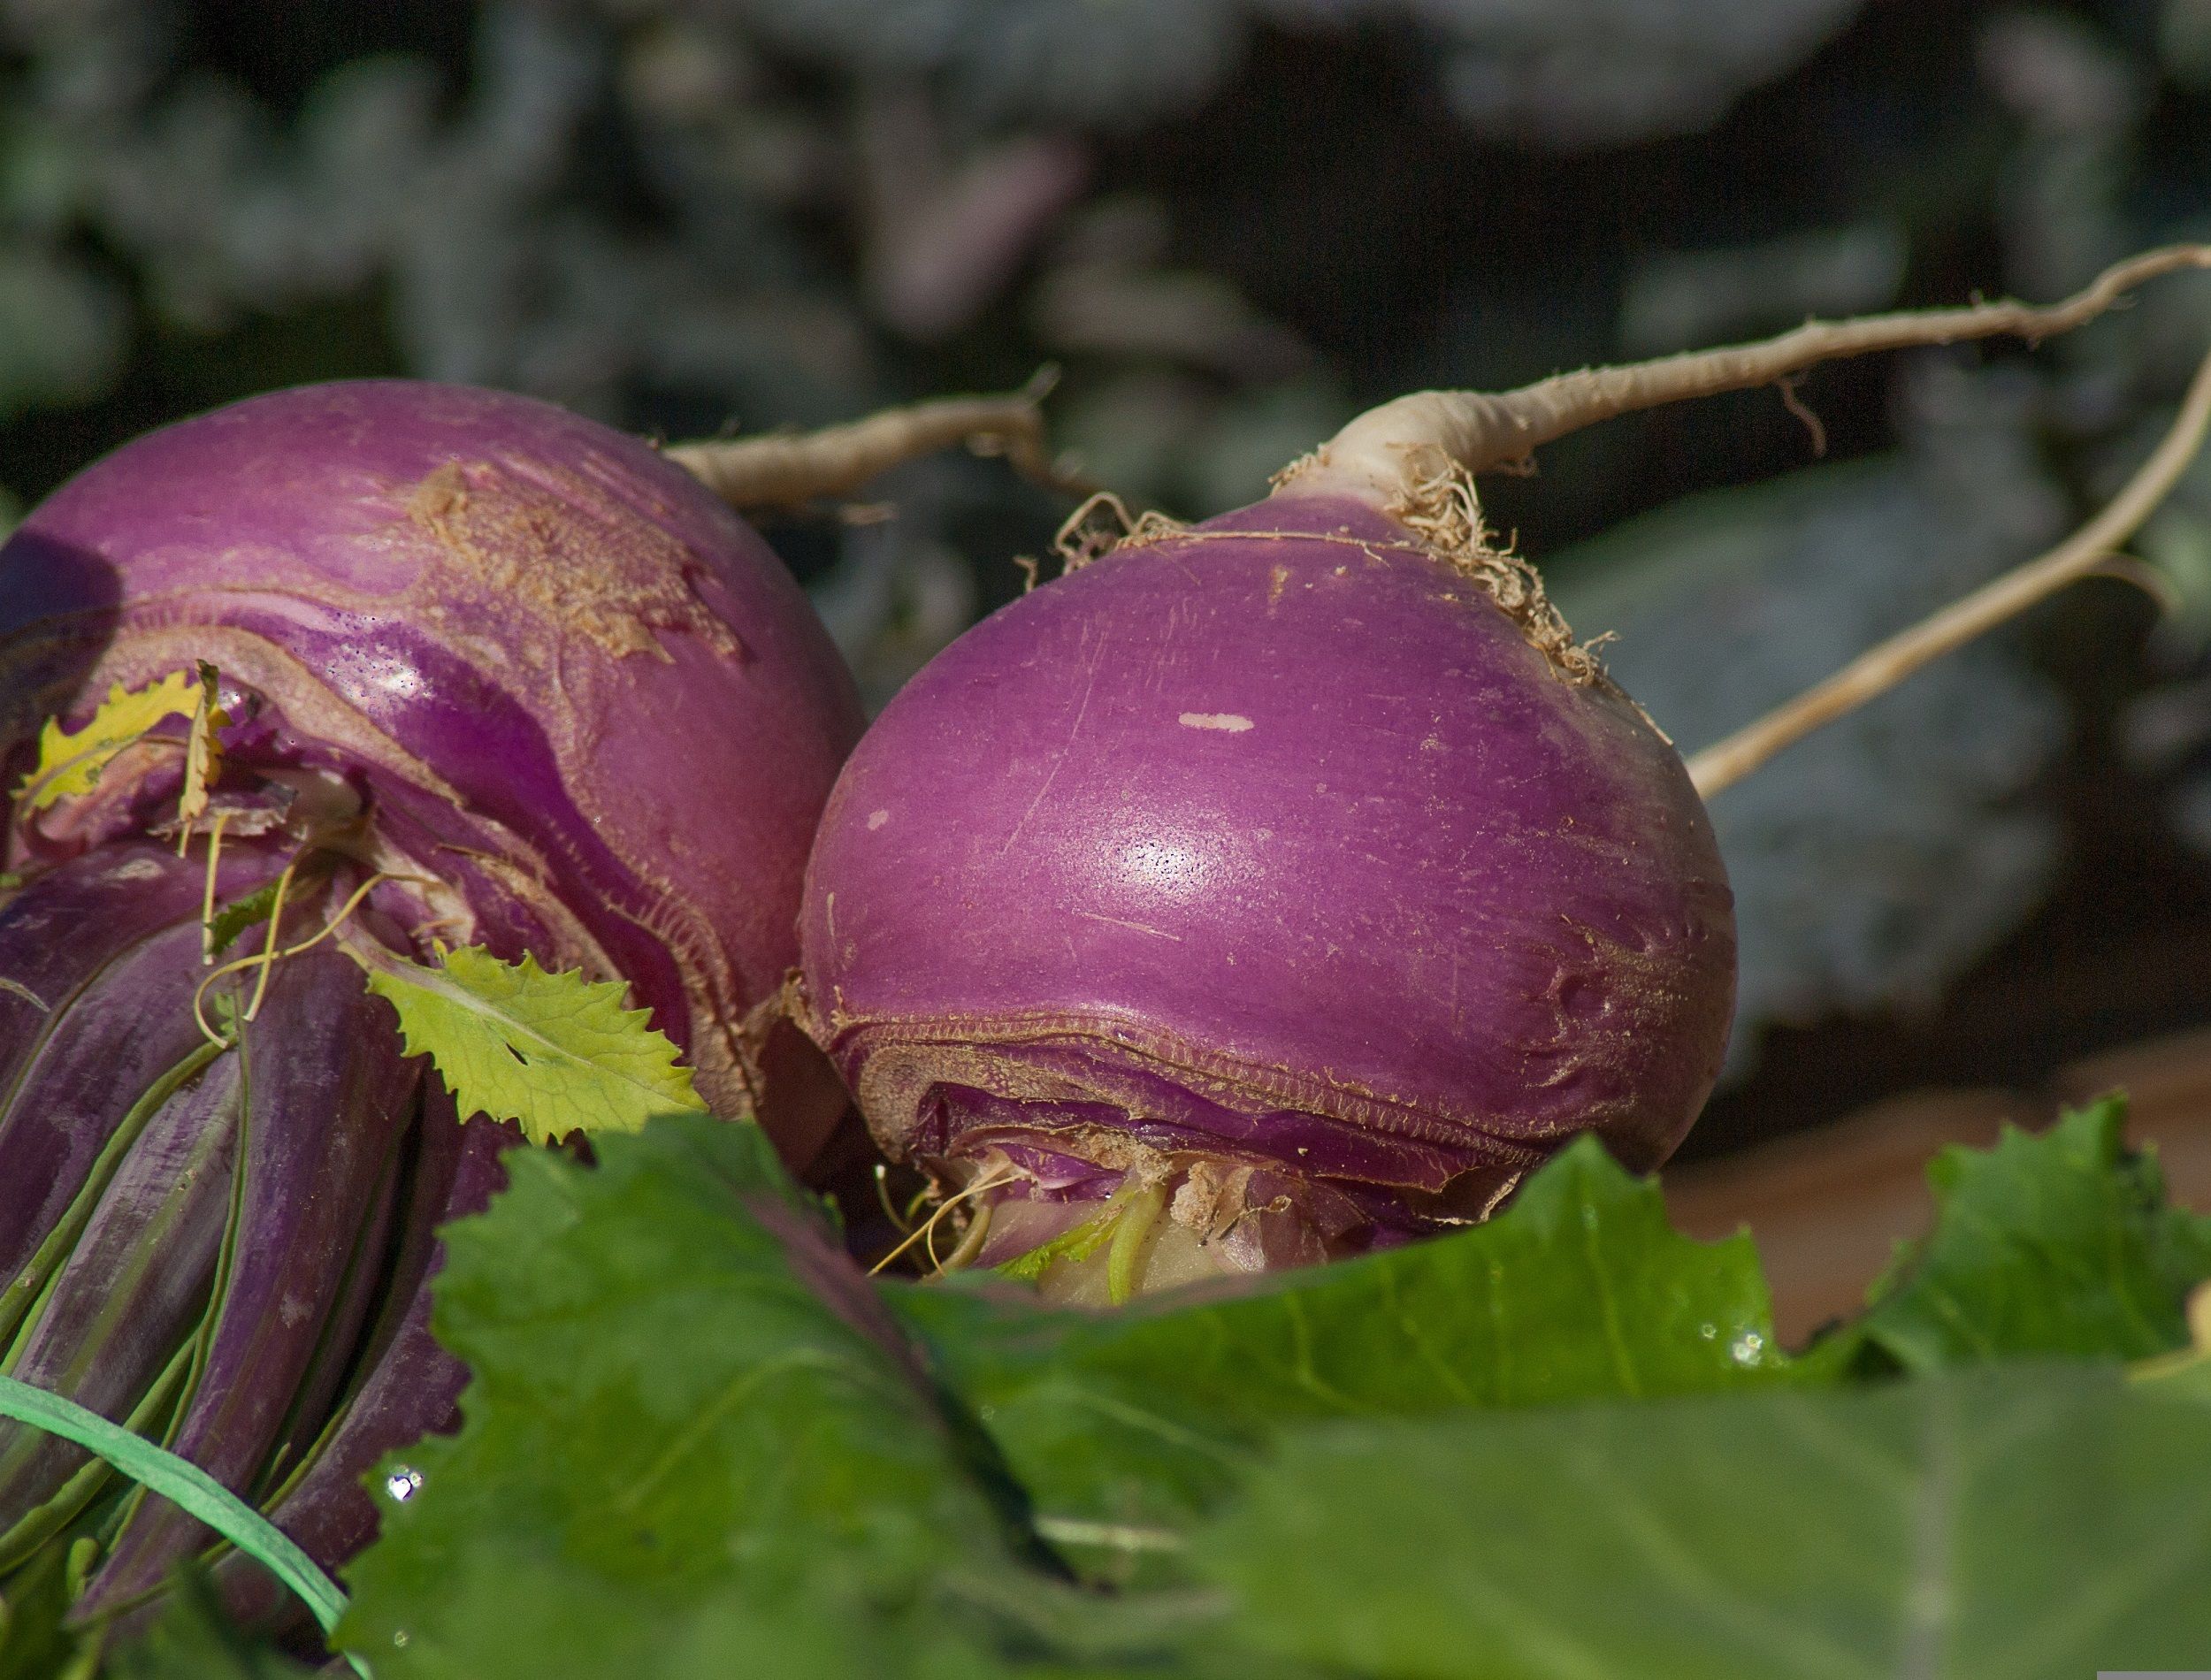 Turnips growing outside